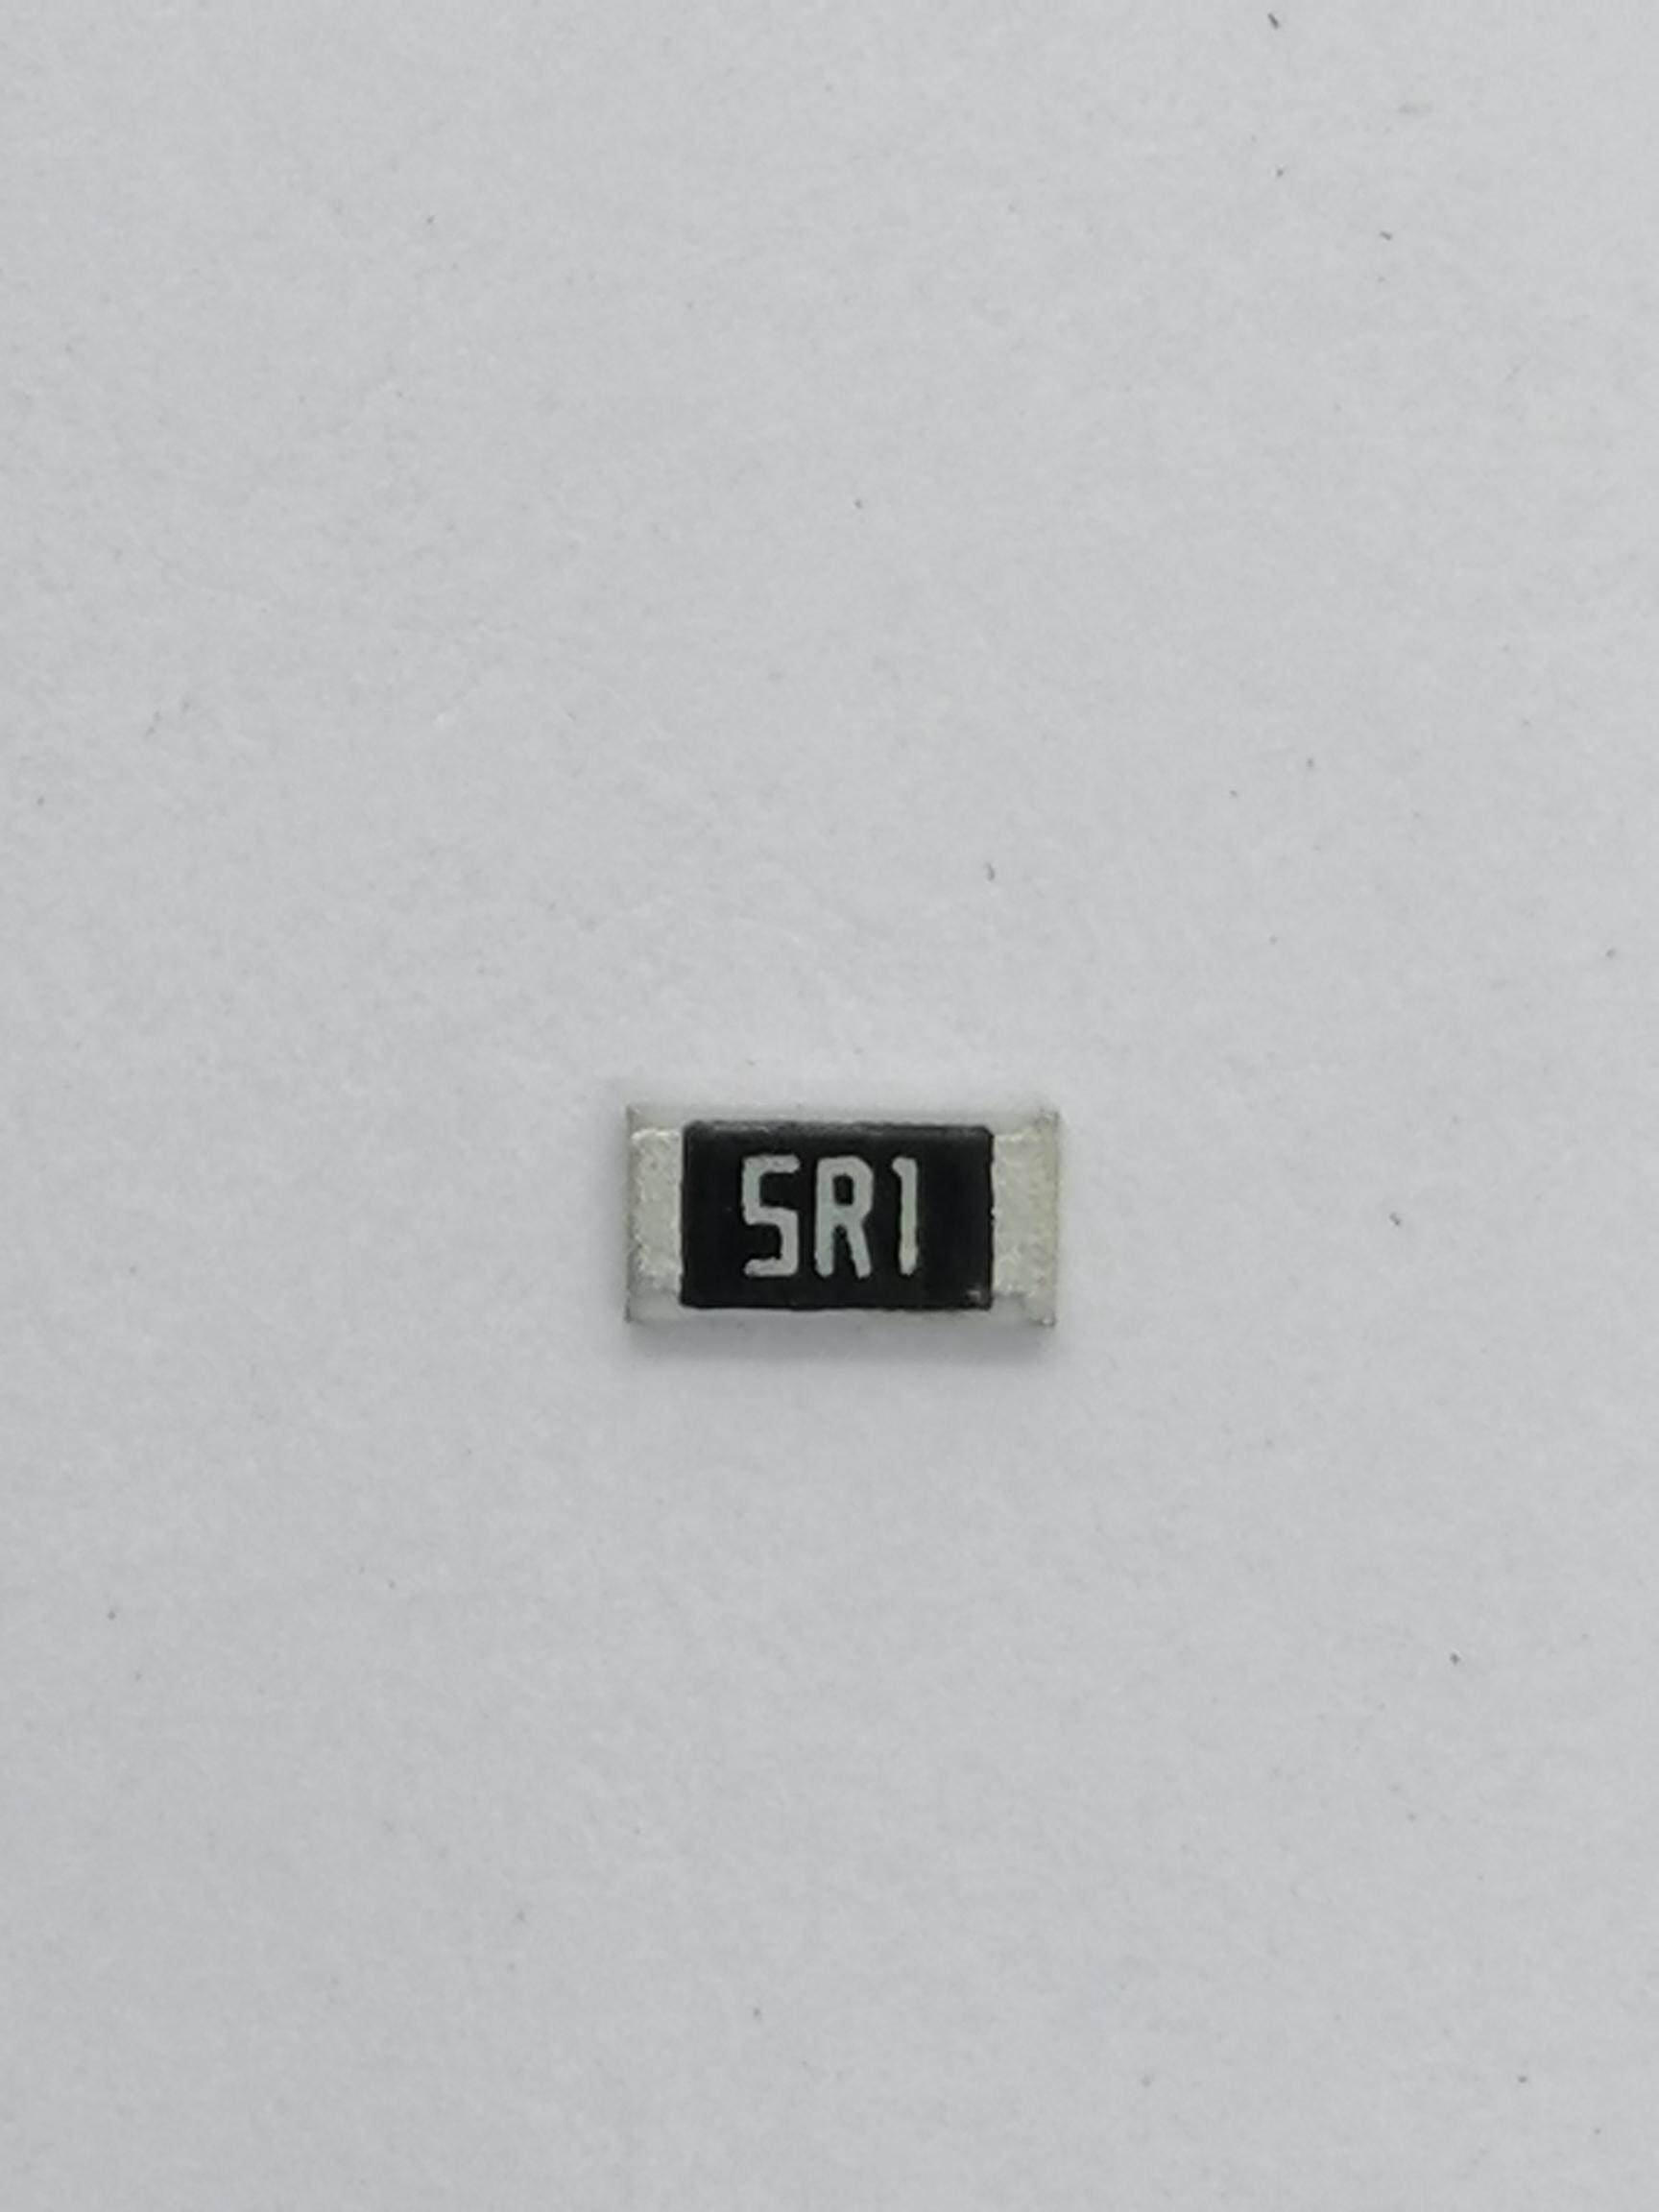 UniOhm 5.1 Ω Ohm 20pcs SMD/SMT 0603 resistors 5R1 